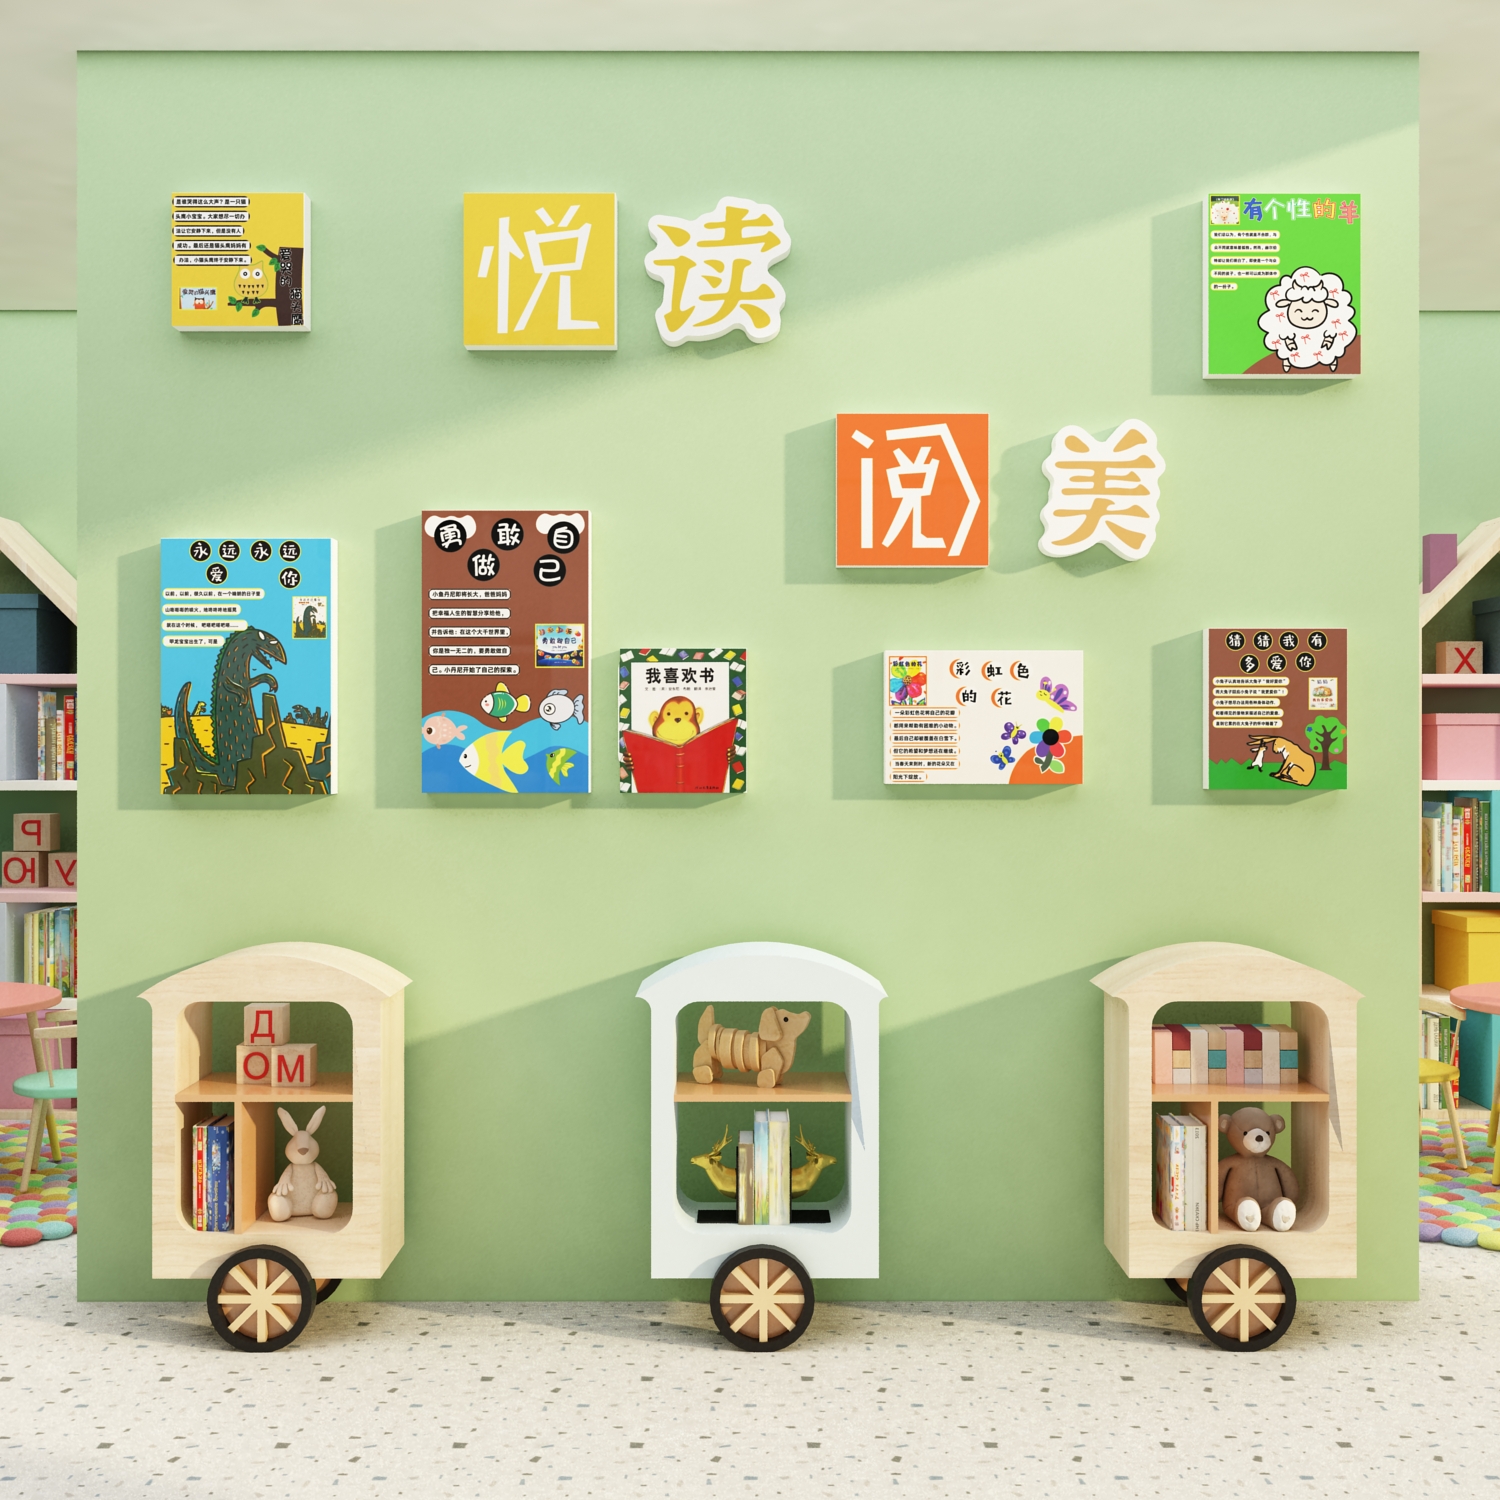 绘本图书馆布置幼儿园阅读区主题环创背景墙面装饰教室文化墙建设